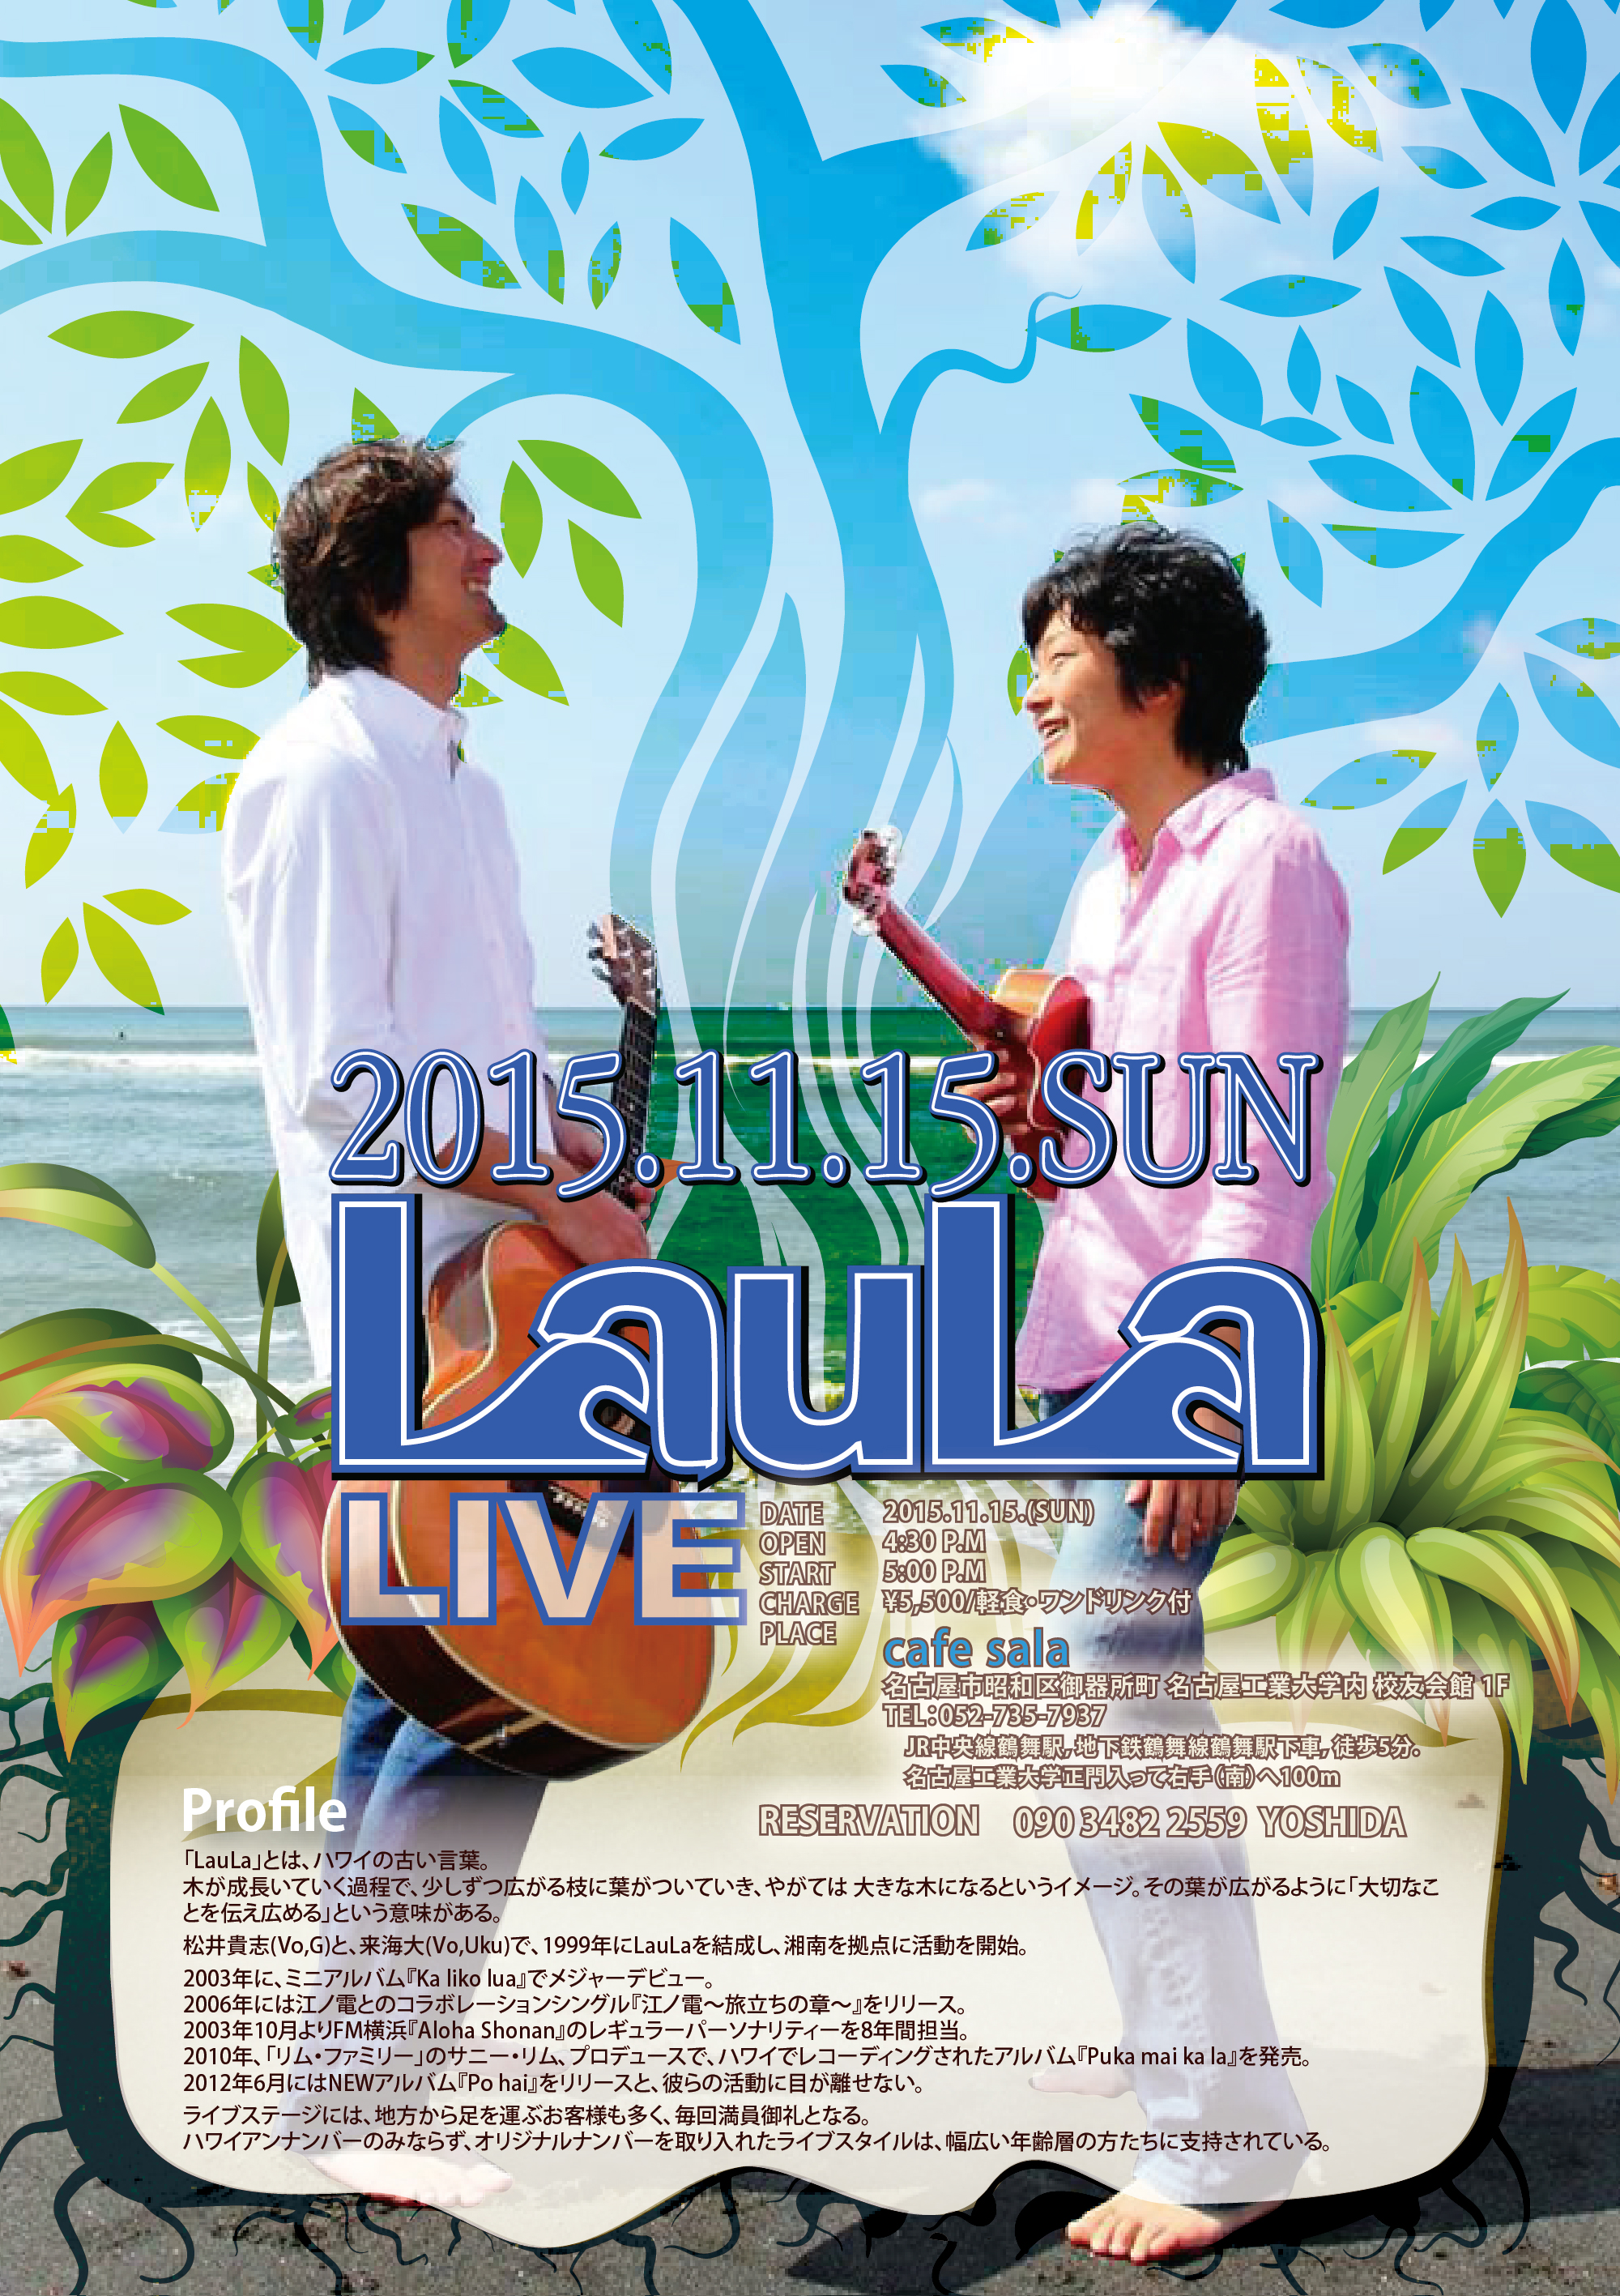 名古屋市東区のホームページ制作 パンフレット制作 ポスター制作会社のOaK 制作実績 Lauala LIVEポスター